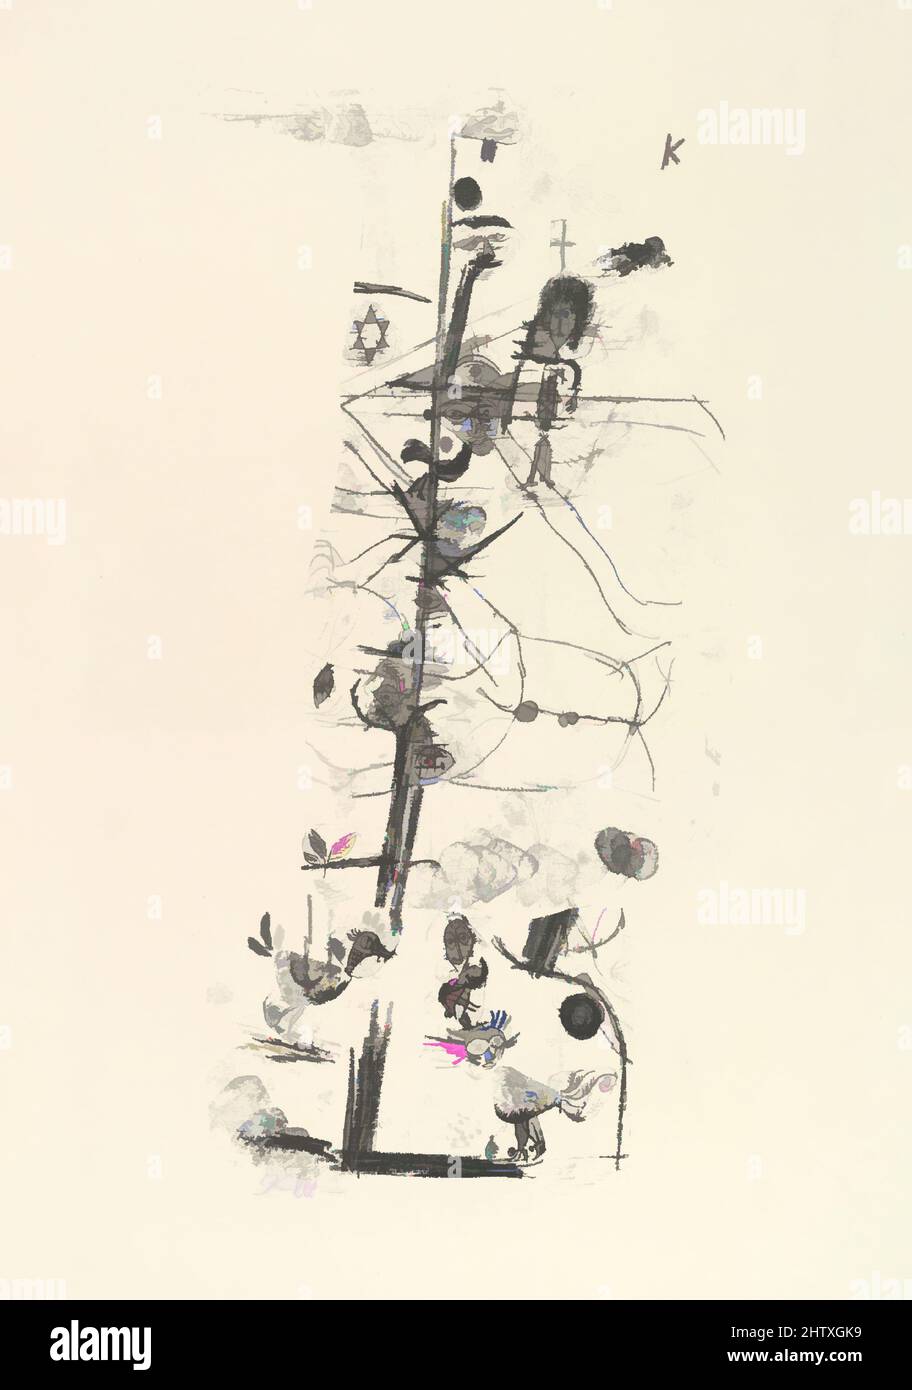 Art Inspired by Bird Comedy (Vogelkomödie), 1918, Lithograph, Blatt: 19 15/16 x 14 5/16 Zoll (50,6 x 36,4 cm), Druckgrafiken, Paul Klee (geboren in der Schweiz), Münchenbuchsee 1879–1940 Muralto-Locarno, Klassische Werke, die von Artotop mit einem Schuss Moderne modernisiert wurden. Formen, Farbe und Wert, auffällige visuelle Wirkung auf Kunst. Emotionen durch Freiheit von Kunstwerken auf zeitgemäße Weise. Eine zeitlose Botschaft, die eine wild kreative neue Richtung verfolgt. Künstler, die sich dem digitalen Medium zuwenden und die Artotop NFT erschaffen Stockfoto